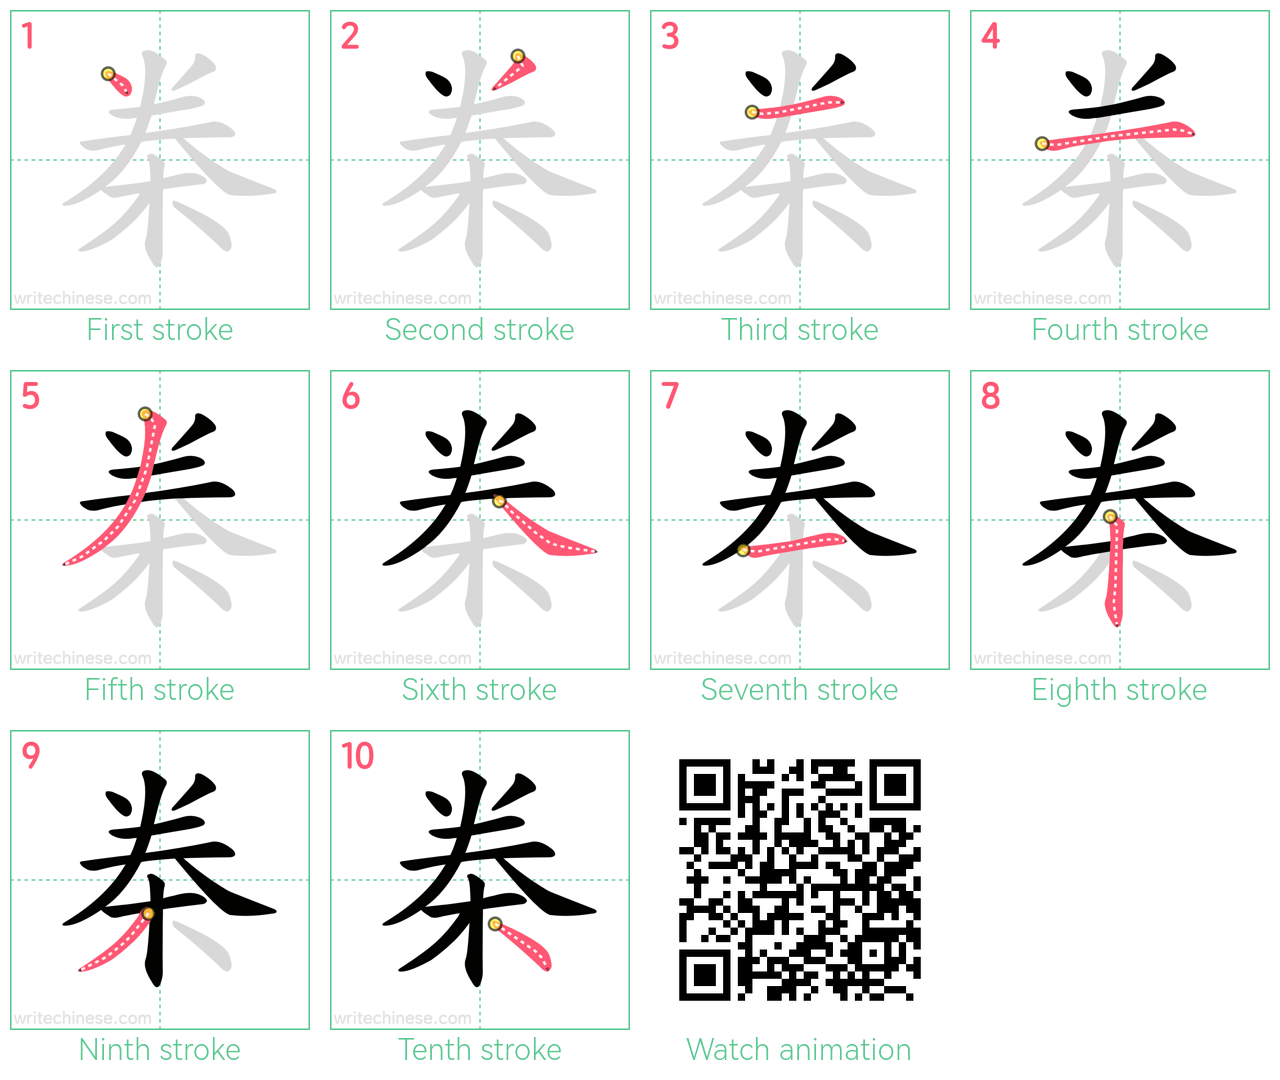 桊 step-by-step stroke order diagrams